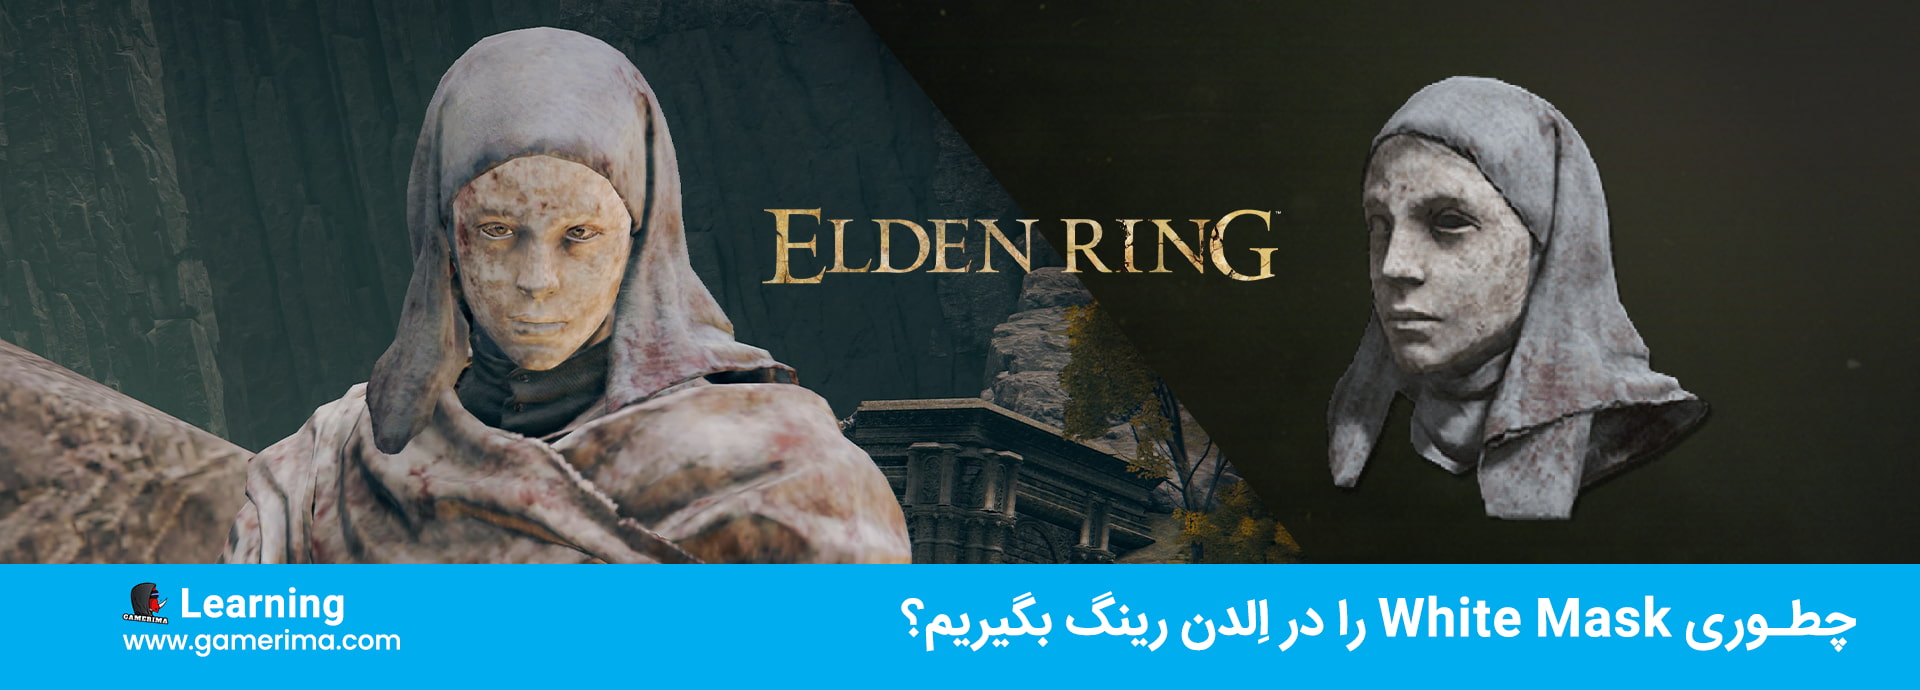 چطوری White Mask را در Elden Ring بگیریم؟